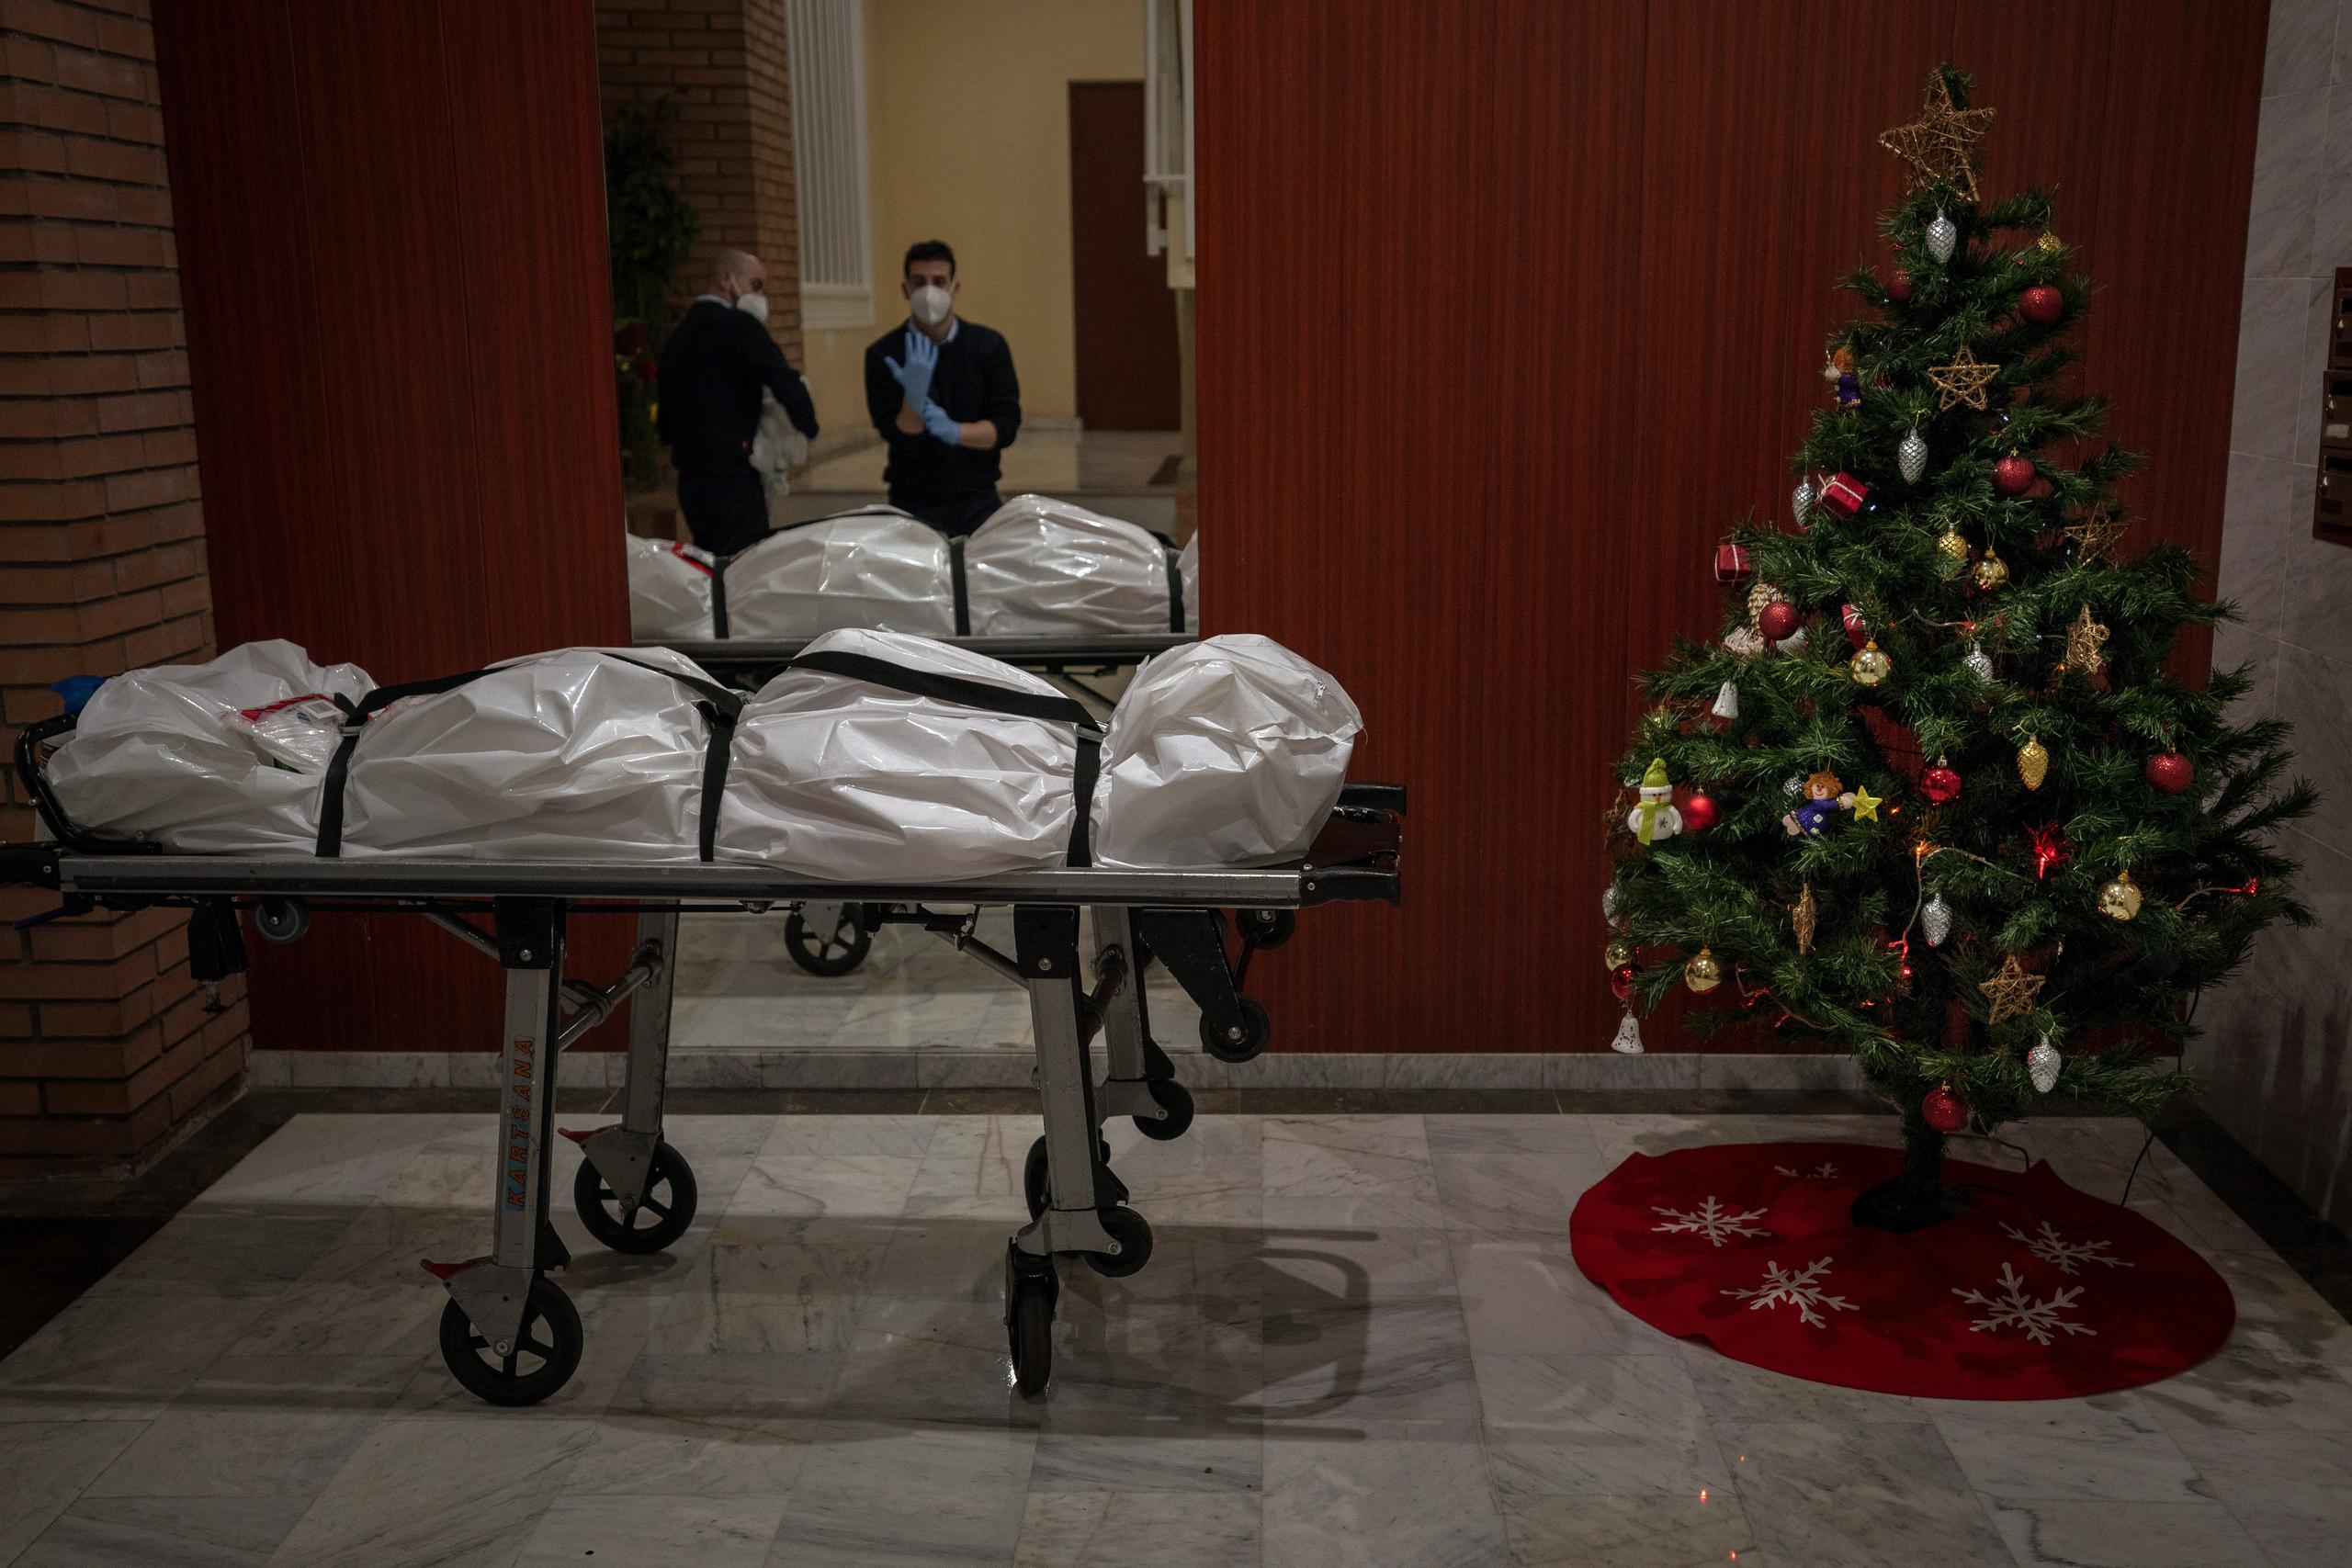 Trabajadores funerarios se quitan su ropa protectoraa la entrada de un edificio decorado con un árbol de Navidad, luego de haber retirado el cuerpo de una persona que presuntamente falleció de COVID-19, en Barcelona, España.